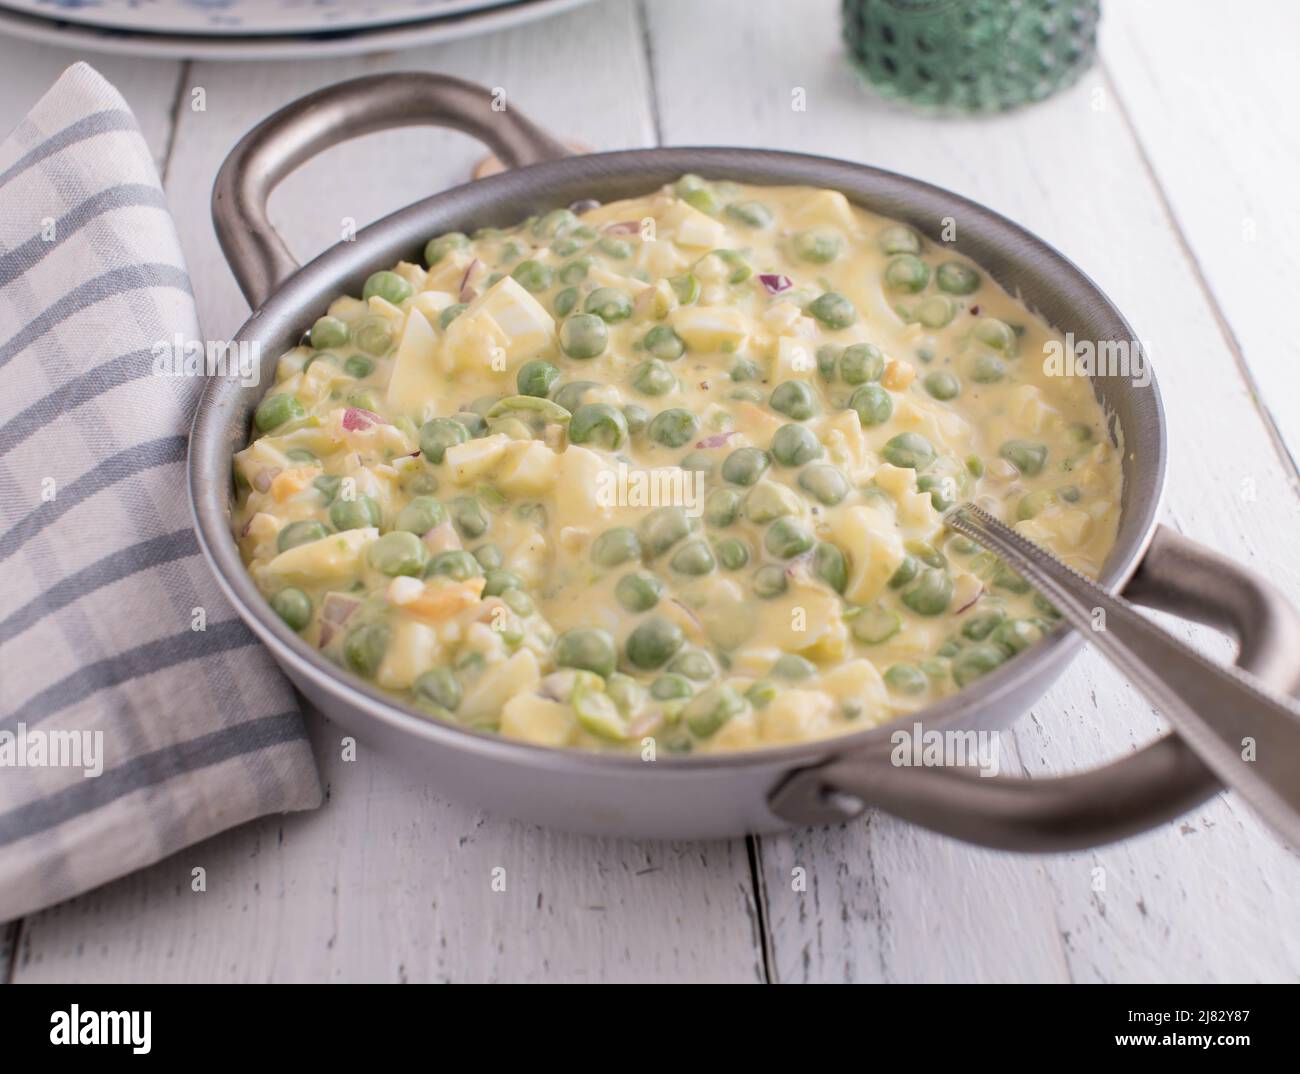 Insalata di uova con piselli verdi, cipolle rosse e maionese in un recipiente con cucchiaio Foto Stock